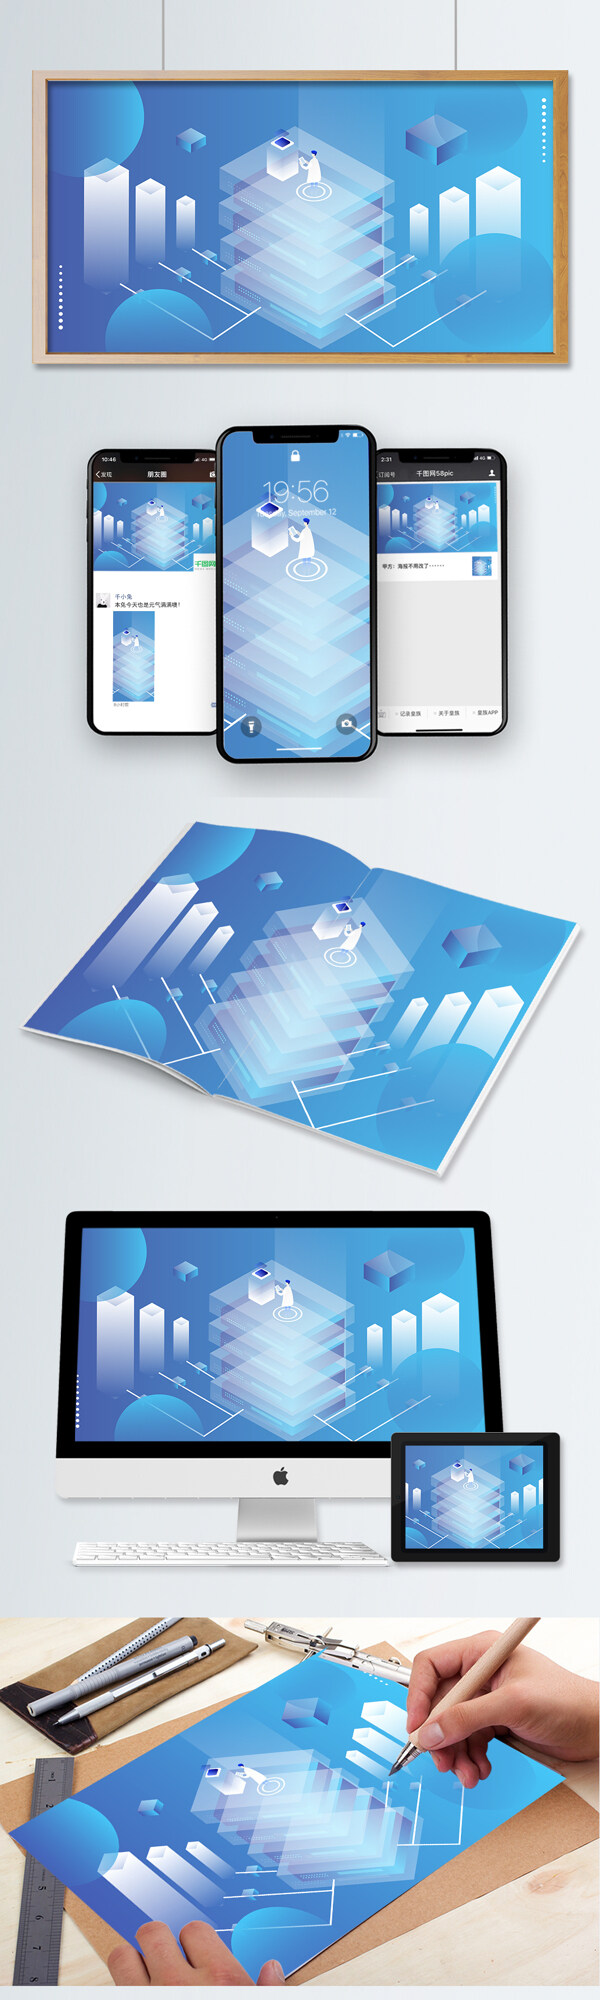 2.5D蓝色透气感科技时代插画